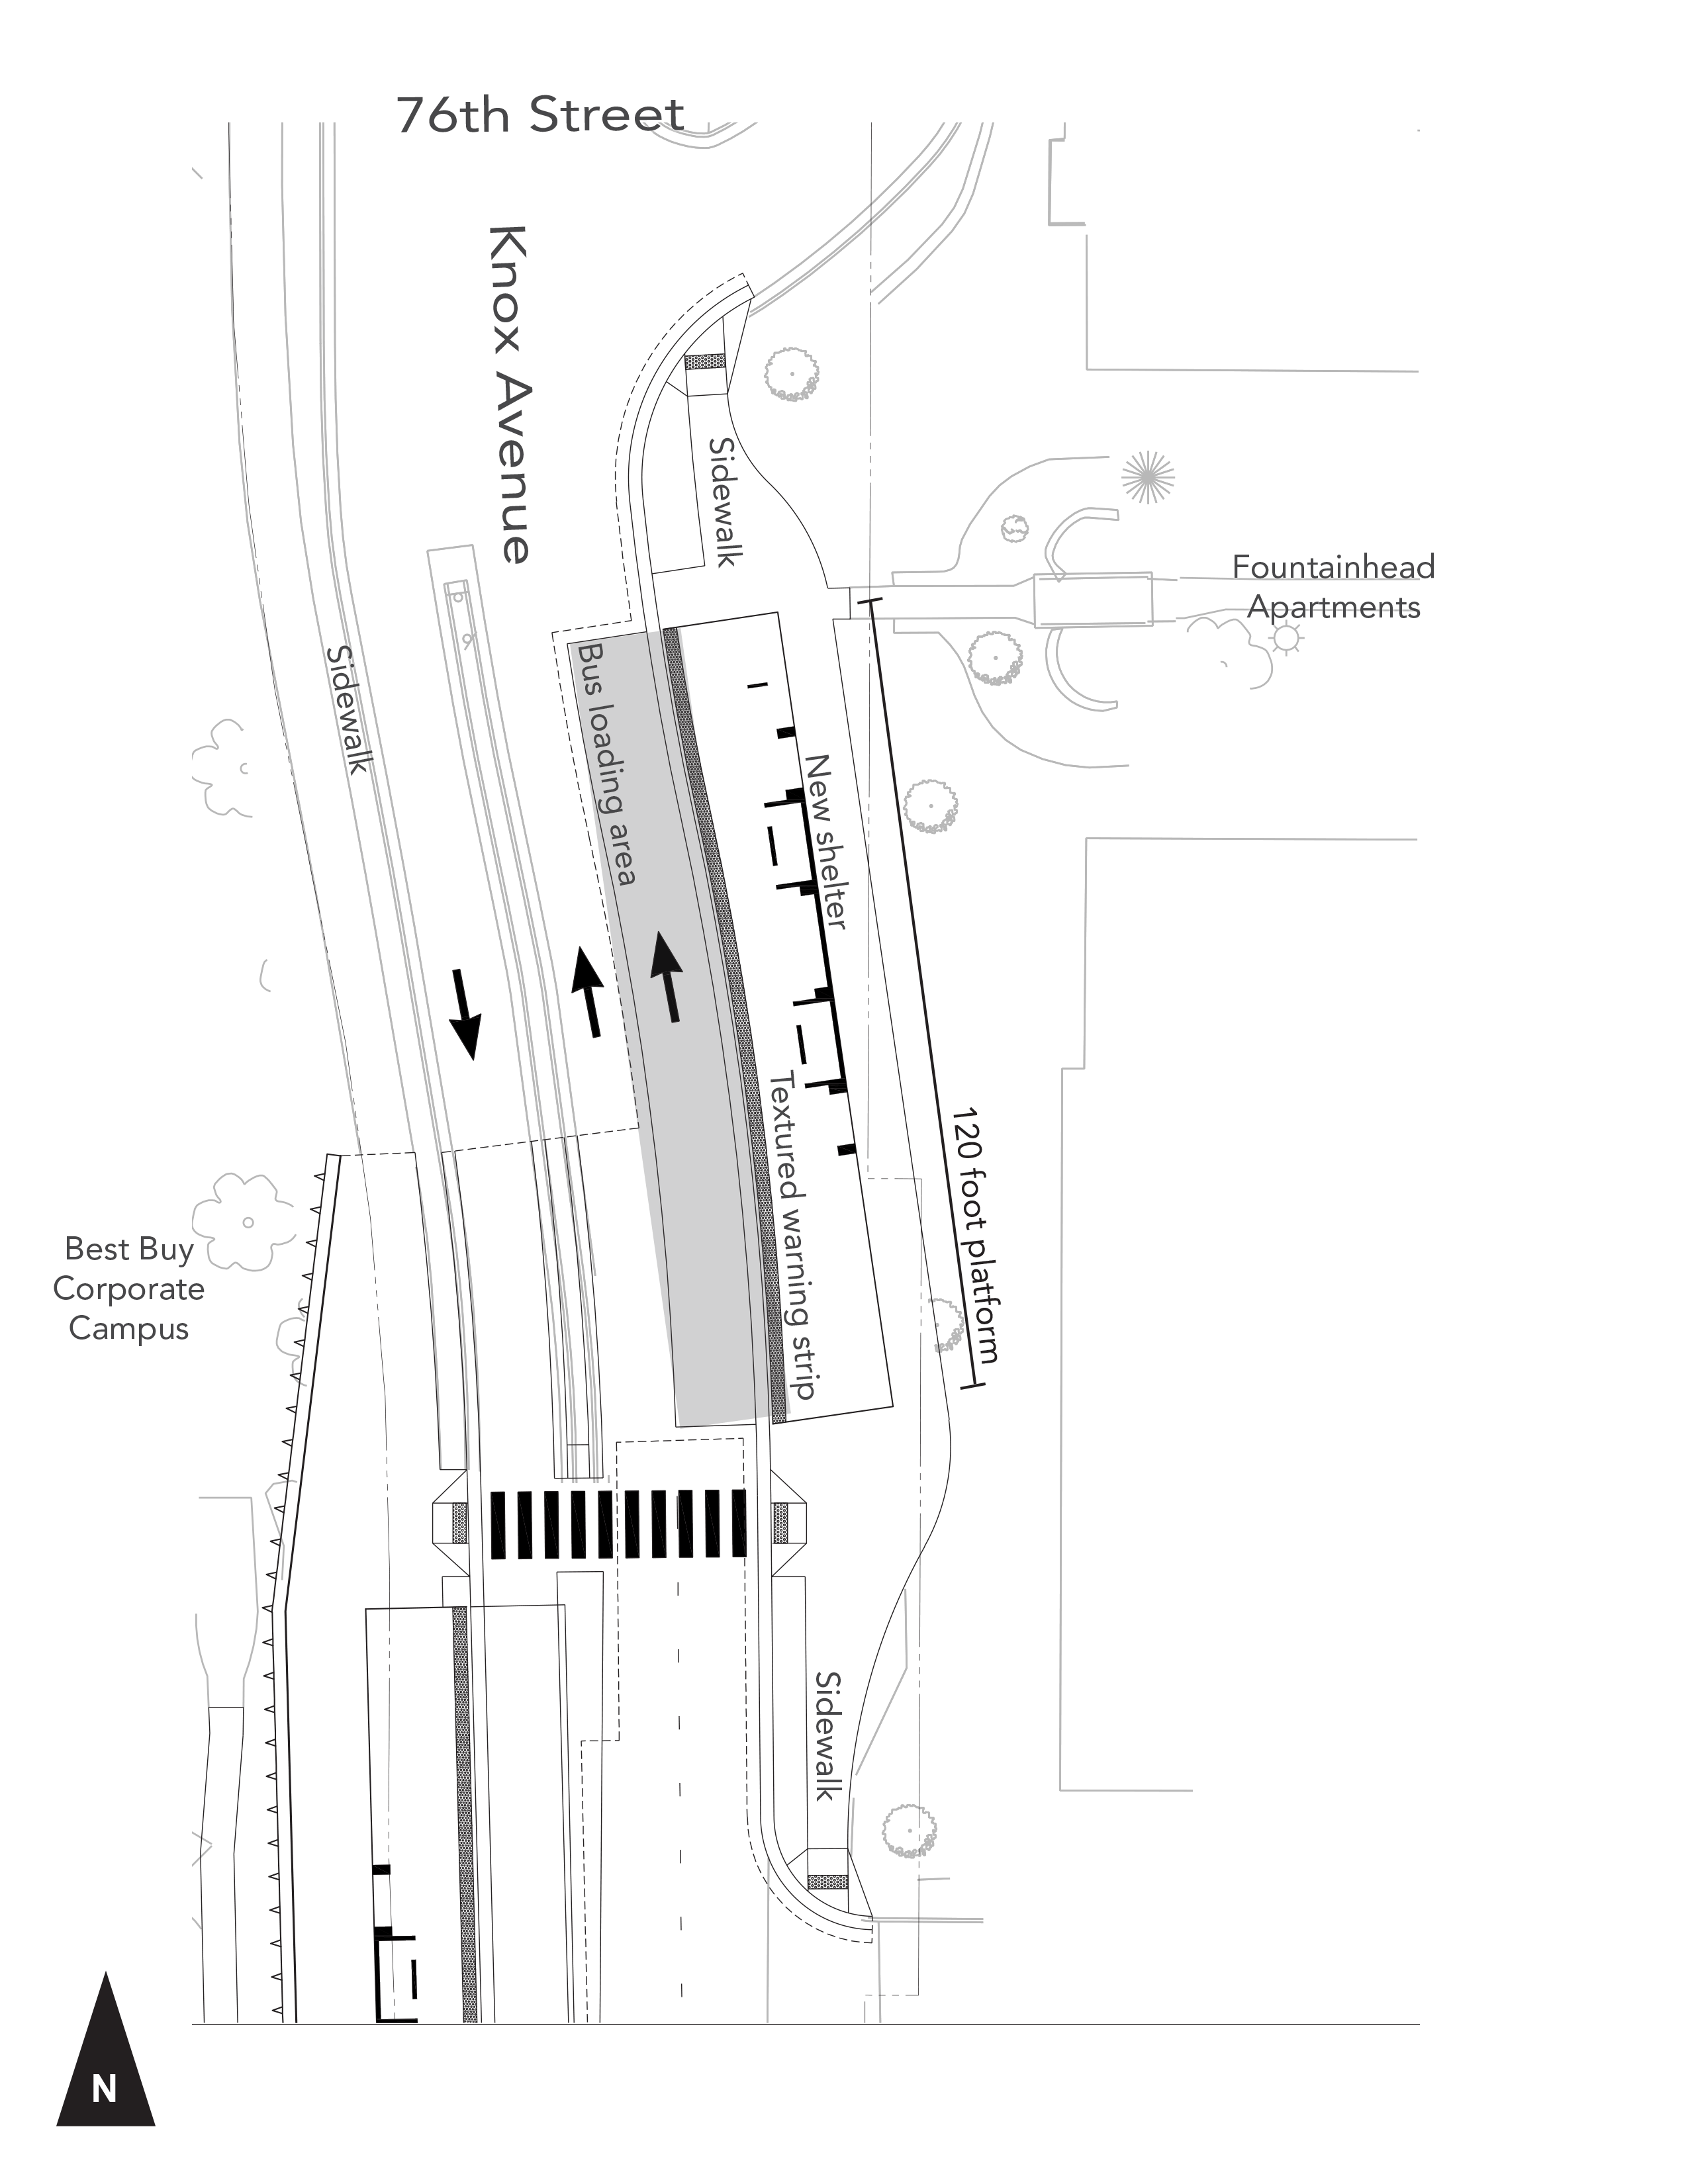 76th Street Station - Northbound - Site Plan